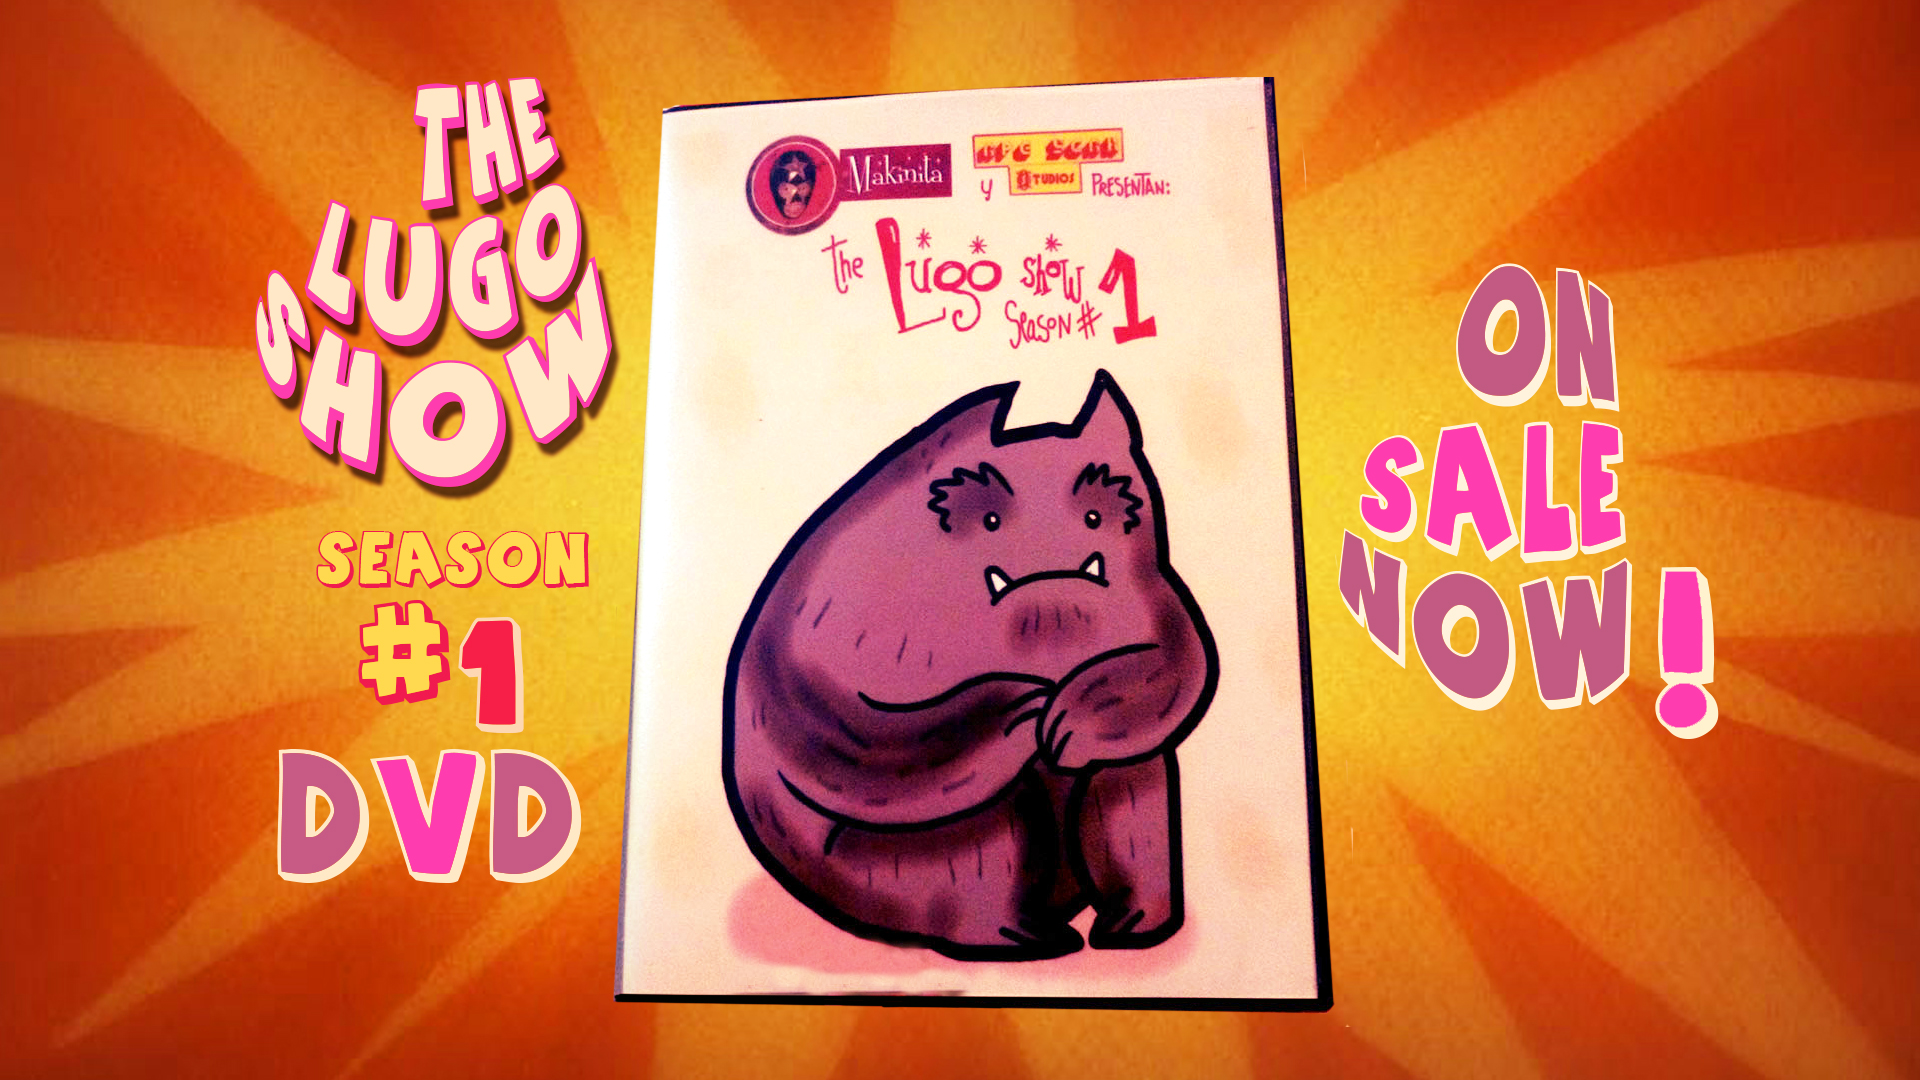 the lugo show dvd Promo